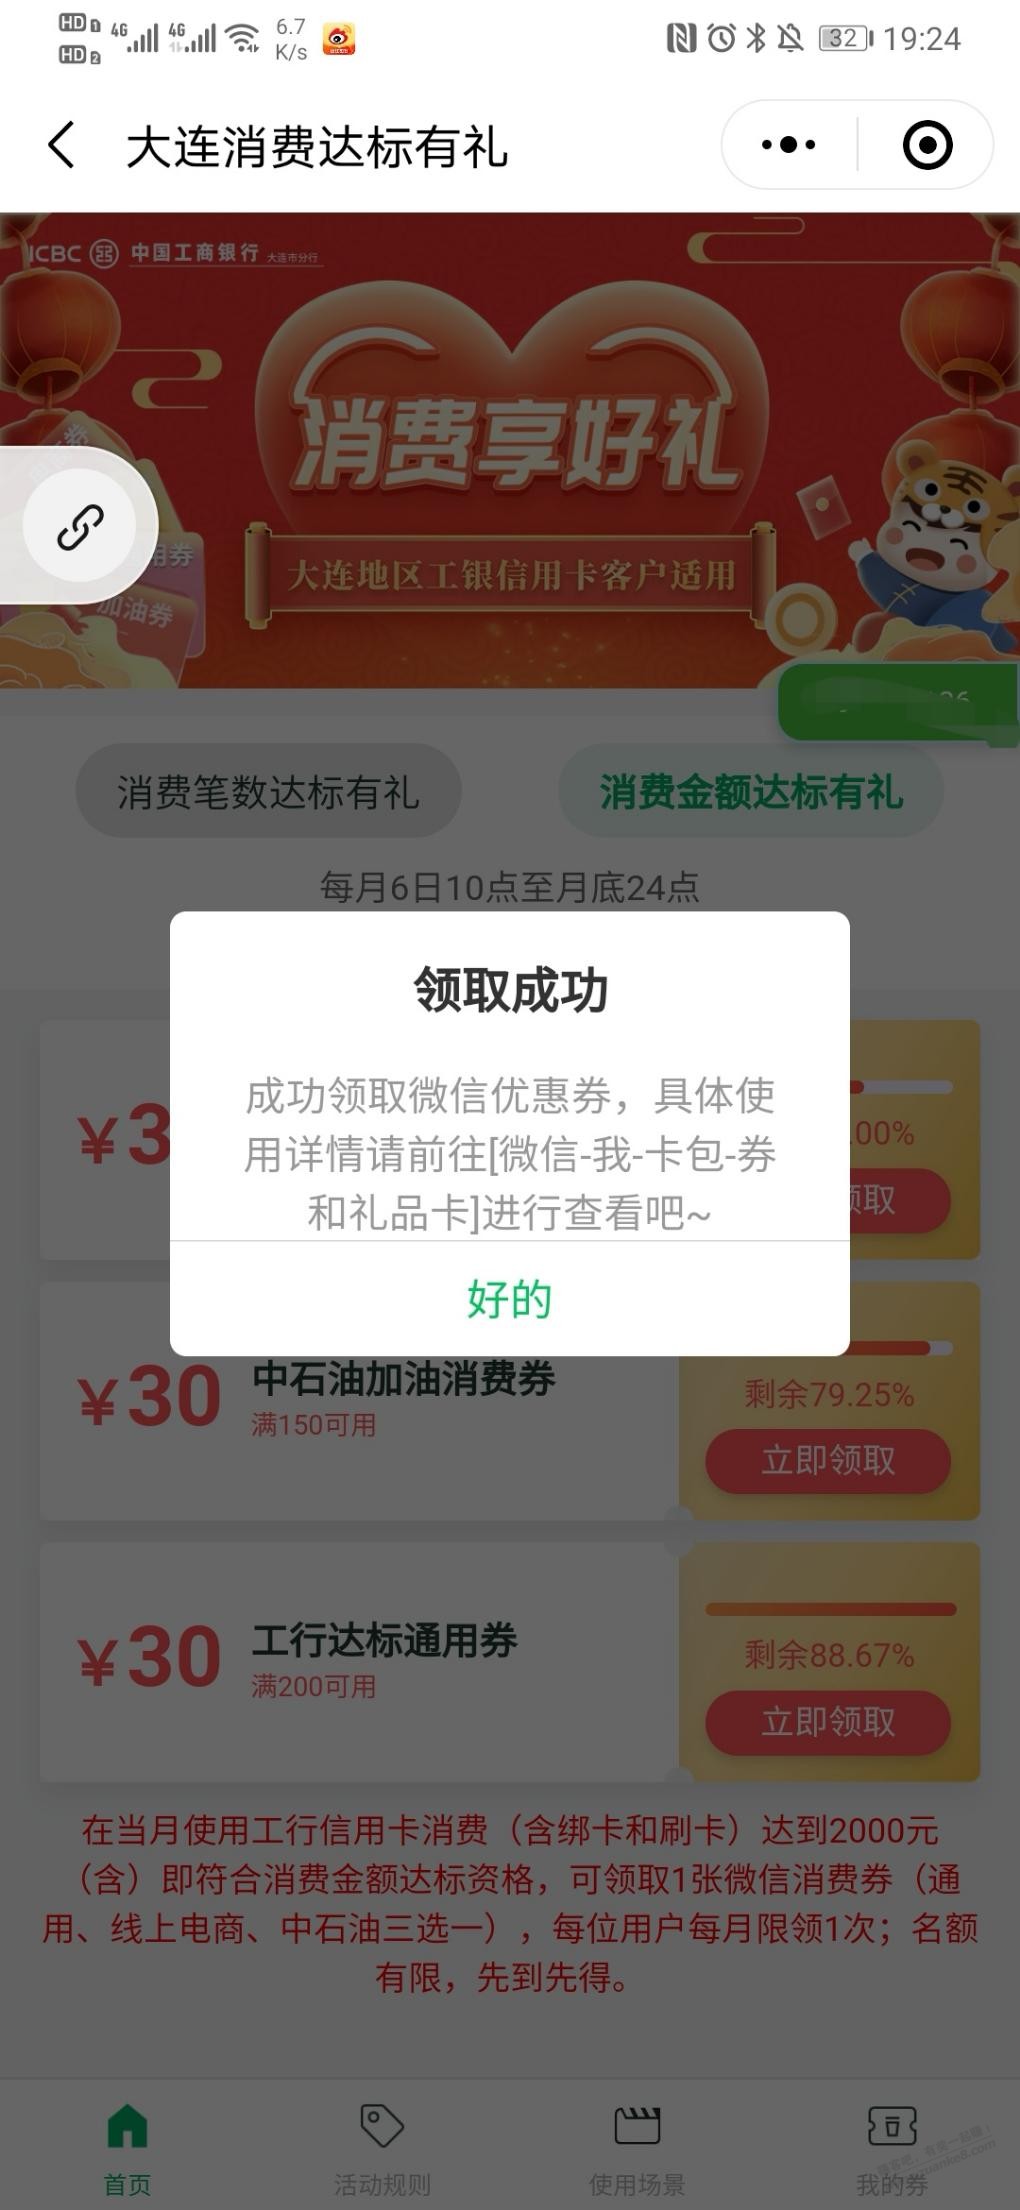 工行大连 e生活plus 达标领100-30-惠小助(52huixz.com)